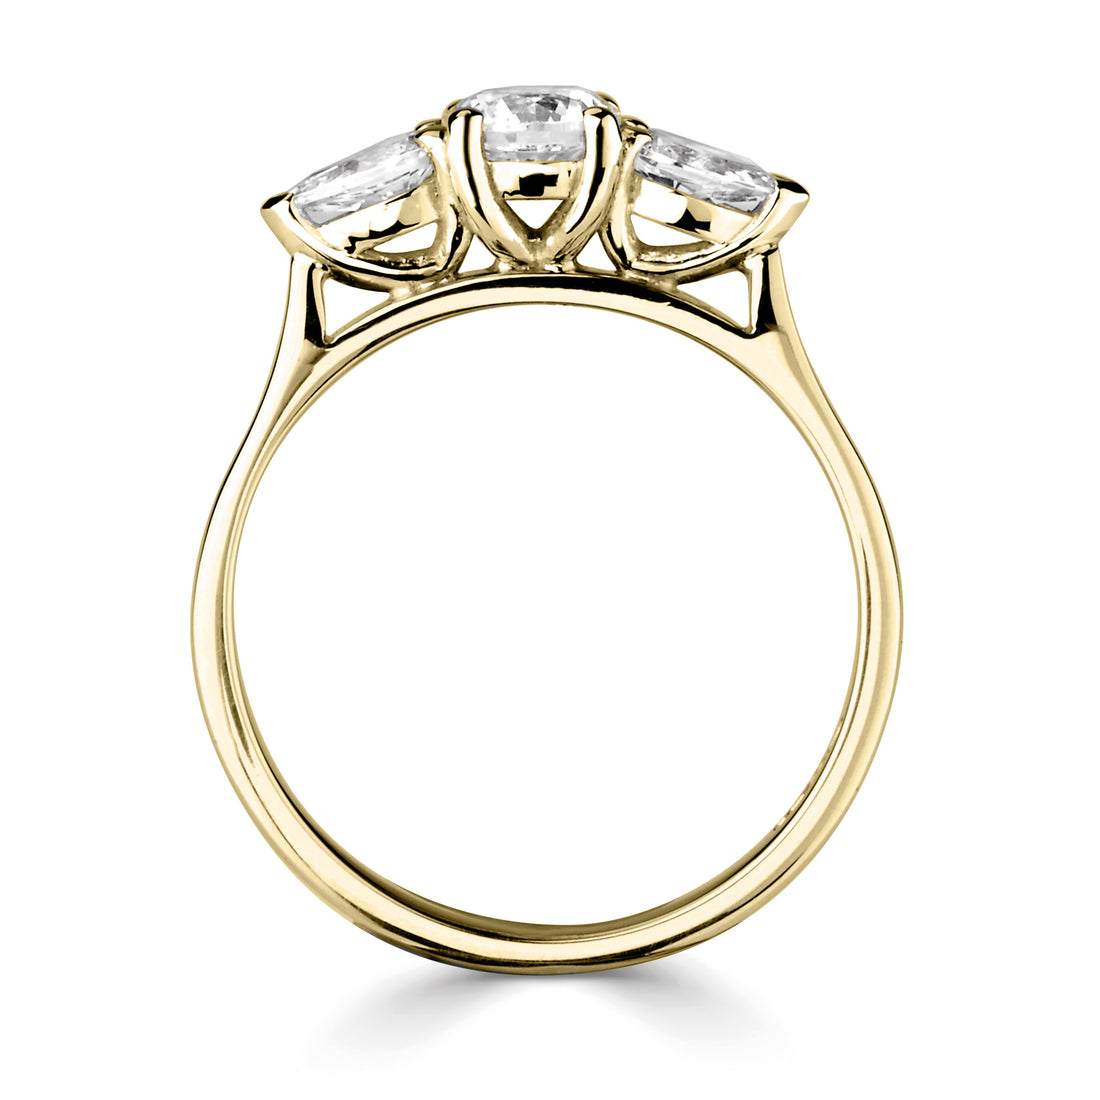 18CT Yellow Gold Diamond Three Stone Ring - Robert Anthony Jewellers, Edinburgh